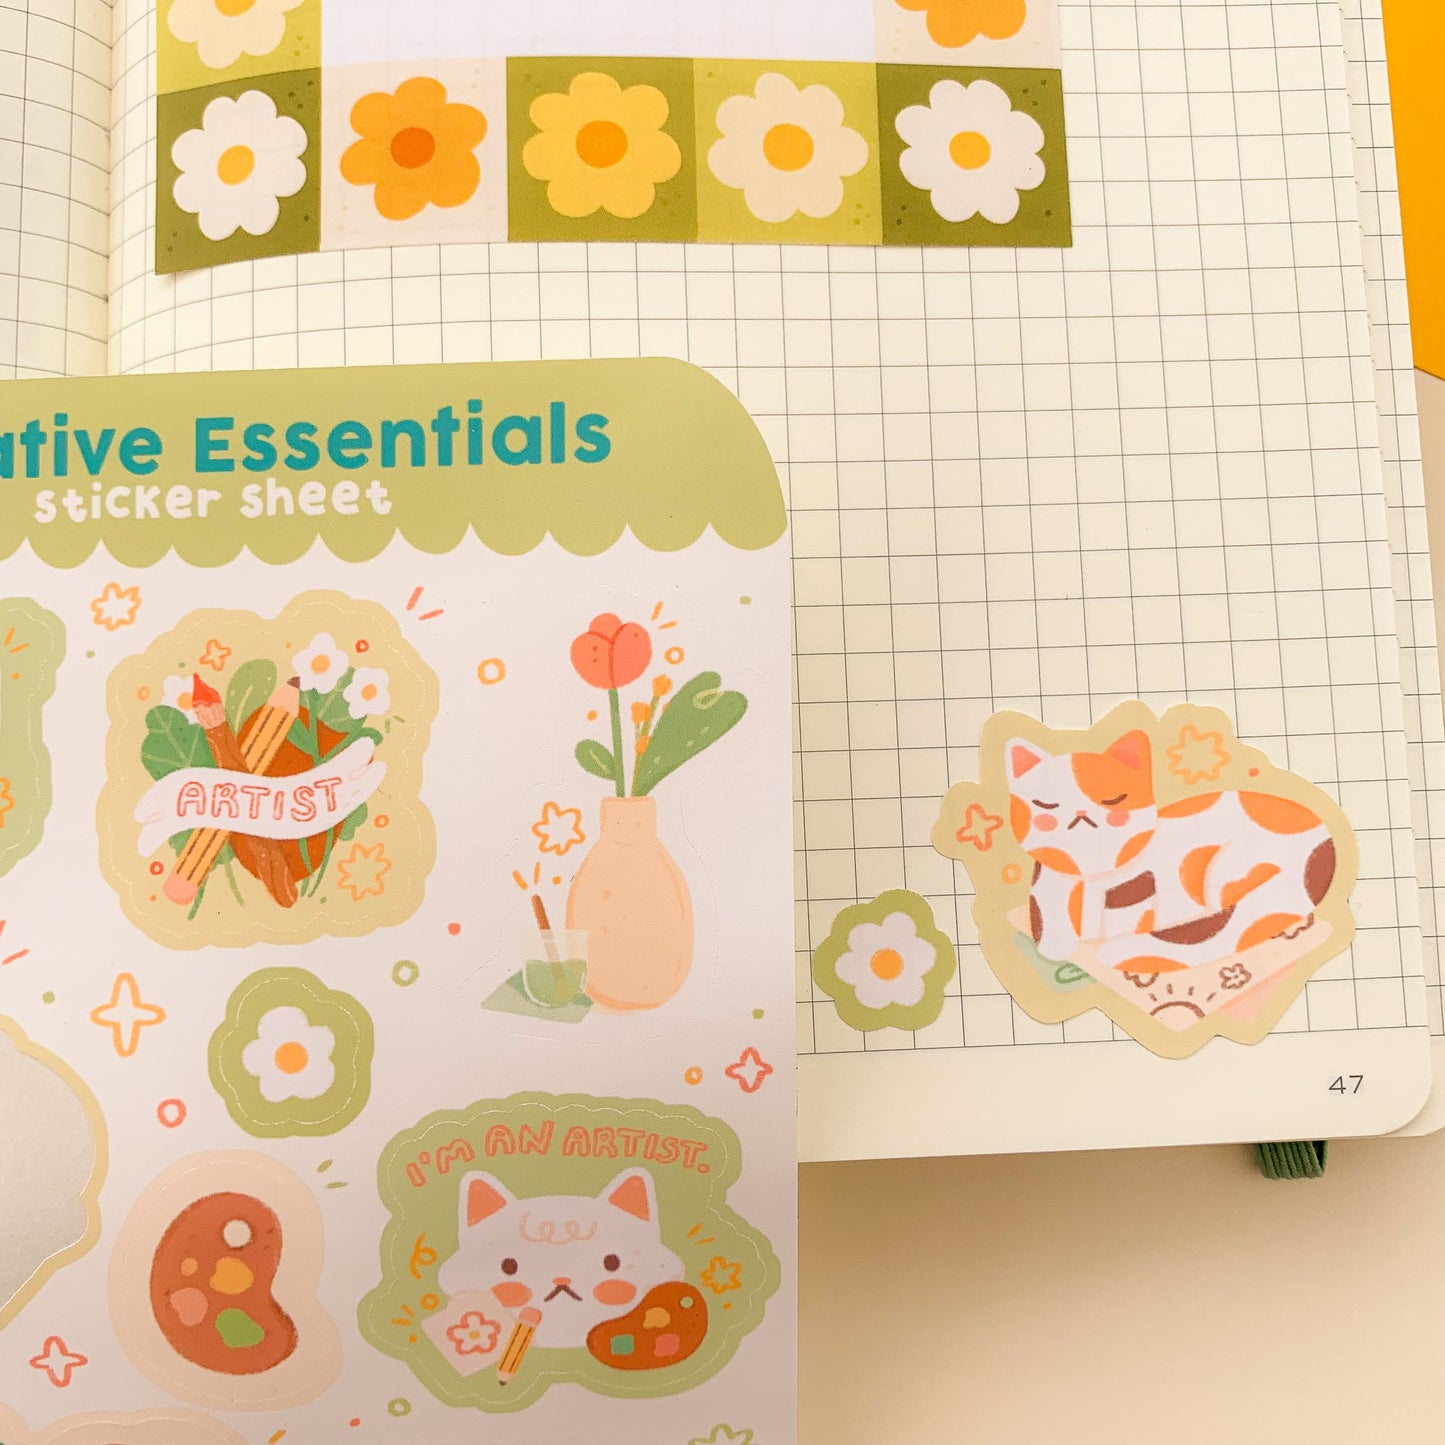 Creative Essentials - Sticker Sheet